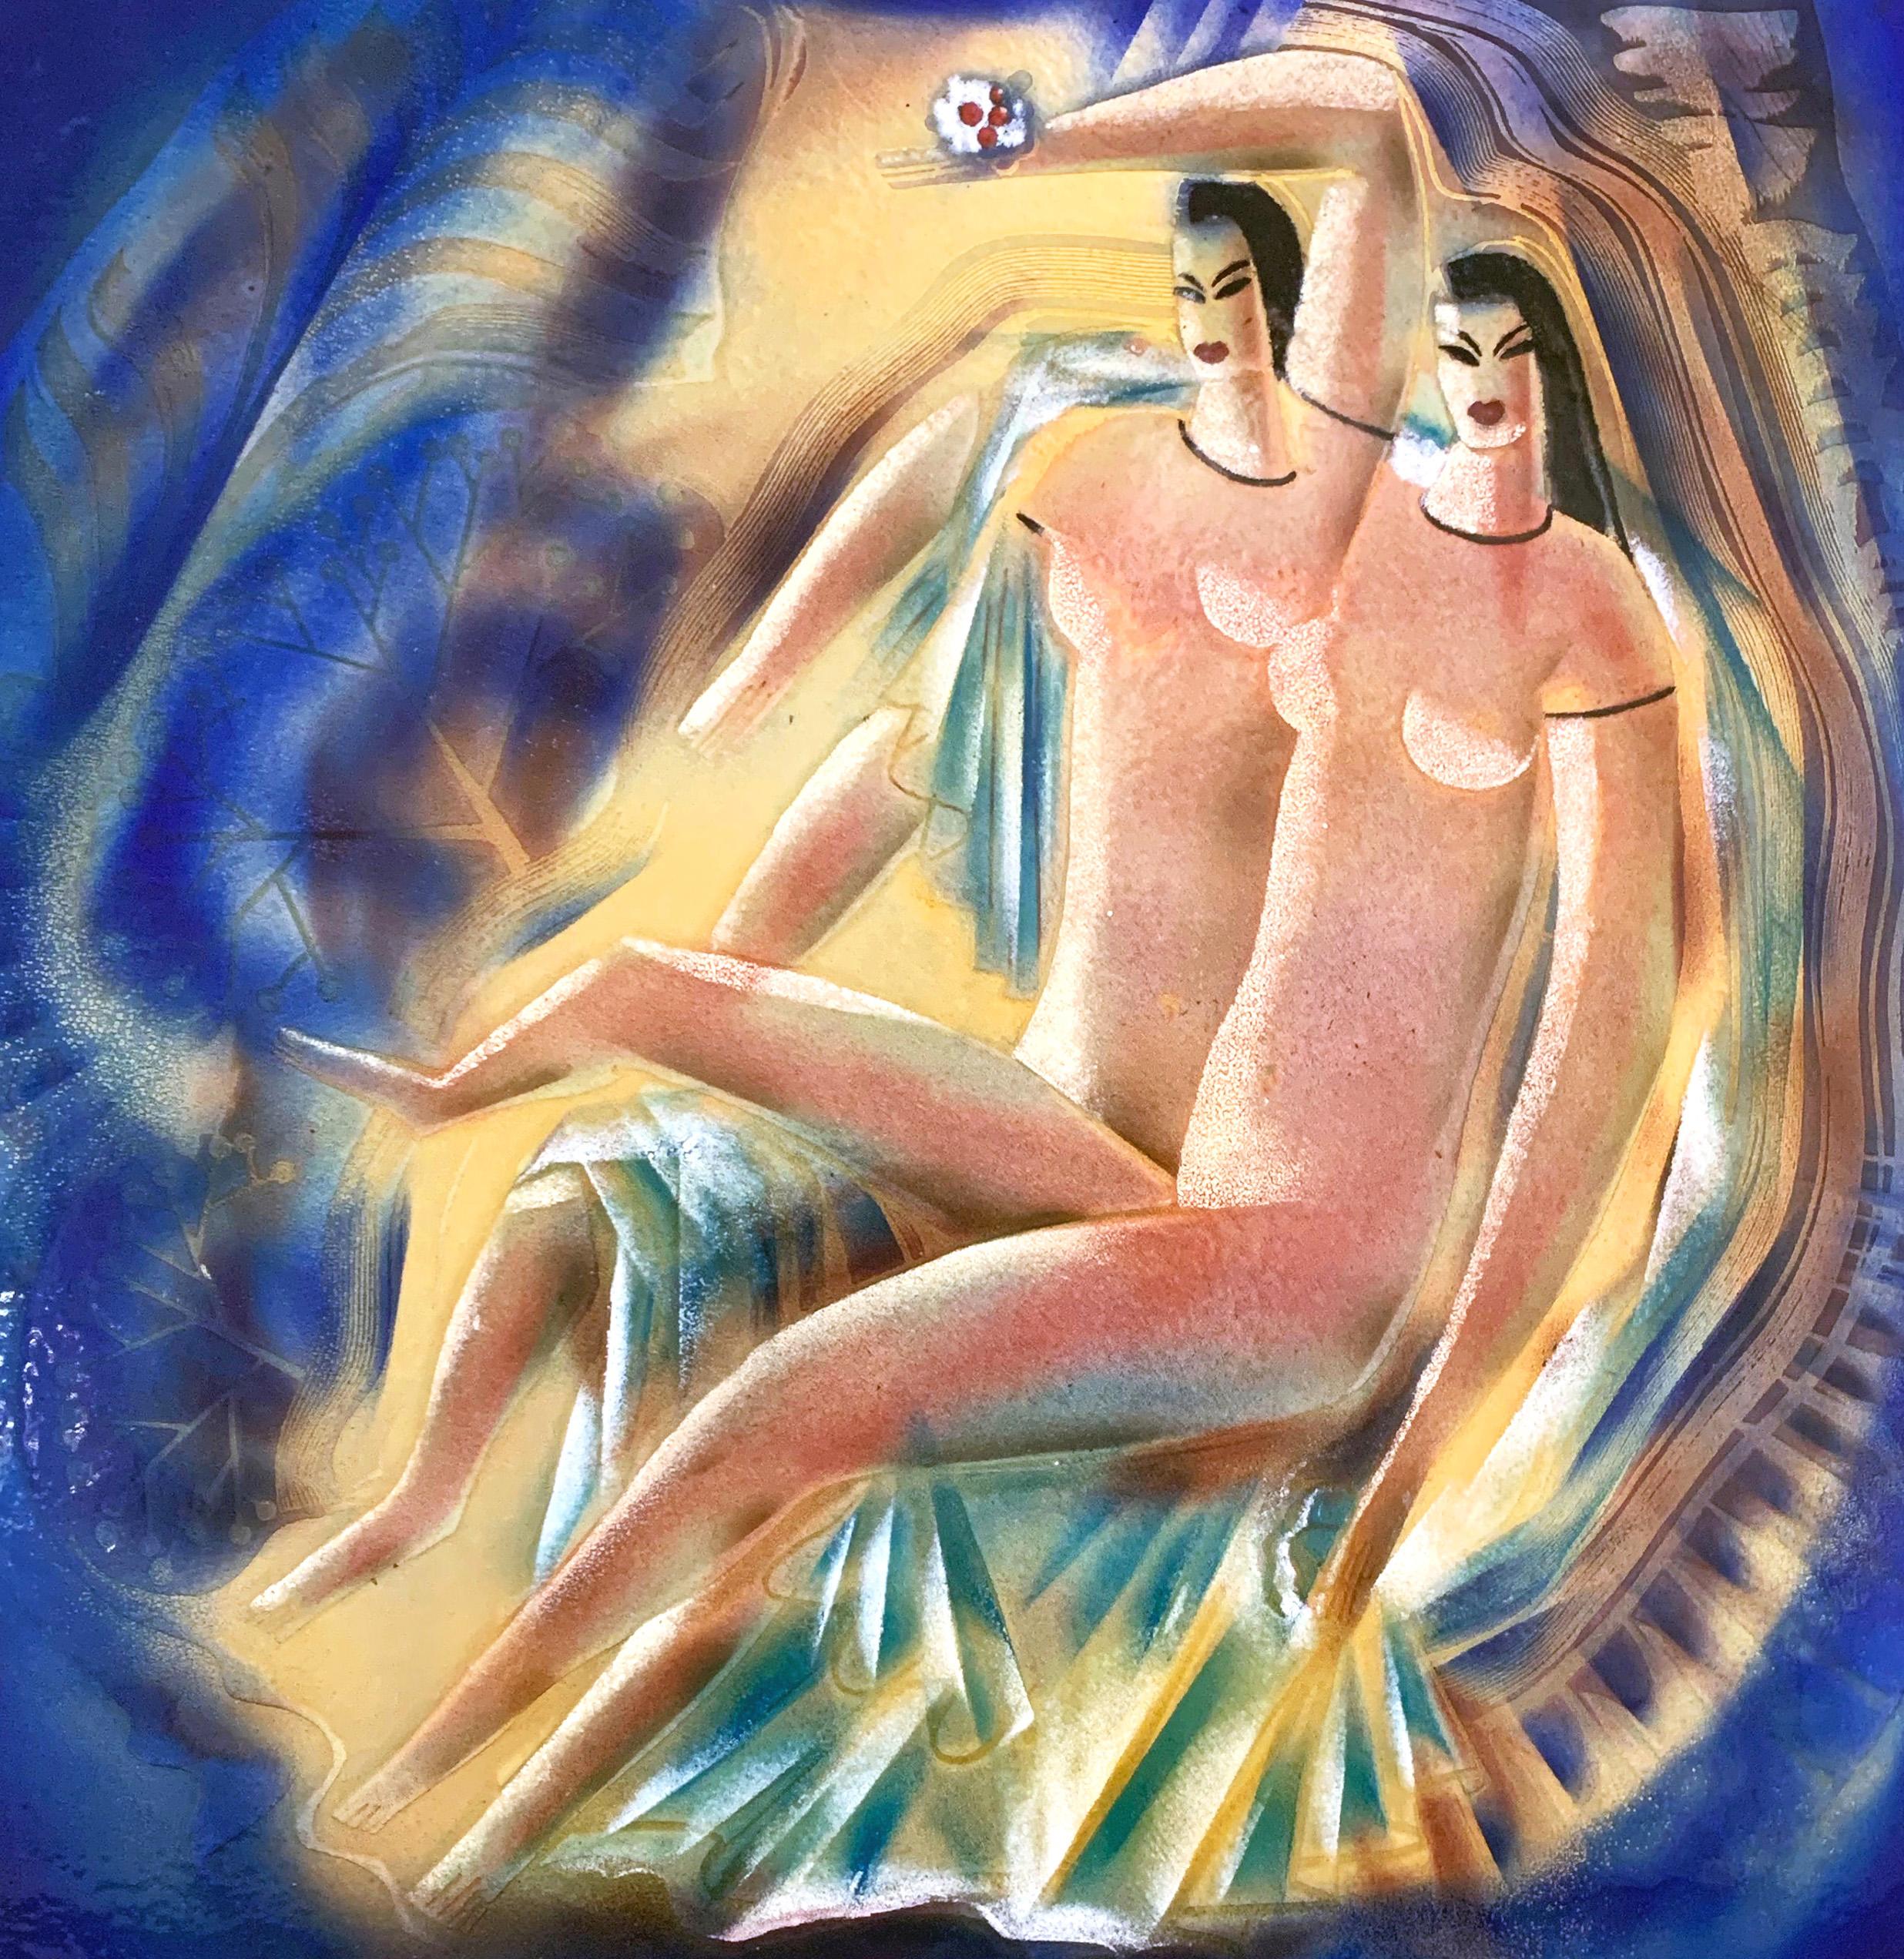 Créé par le plus grand maître de la peinture sur émail de la période Art déco américaine, Edward Brilliante, ce grand panneau spectaculaire présente deux figures féminines nues, incroyablement allongées à la manière maniériste moderne, le tout